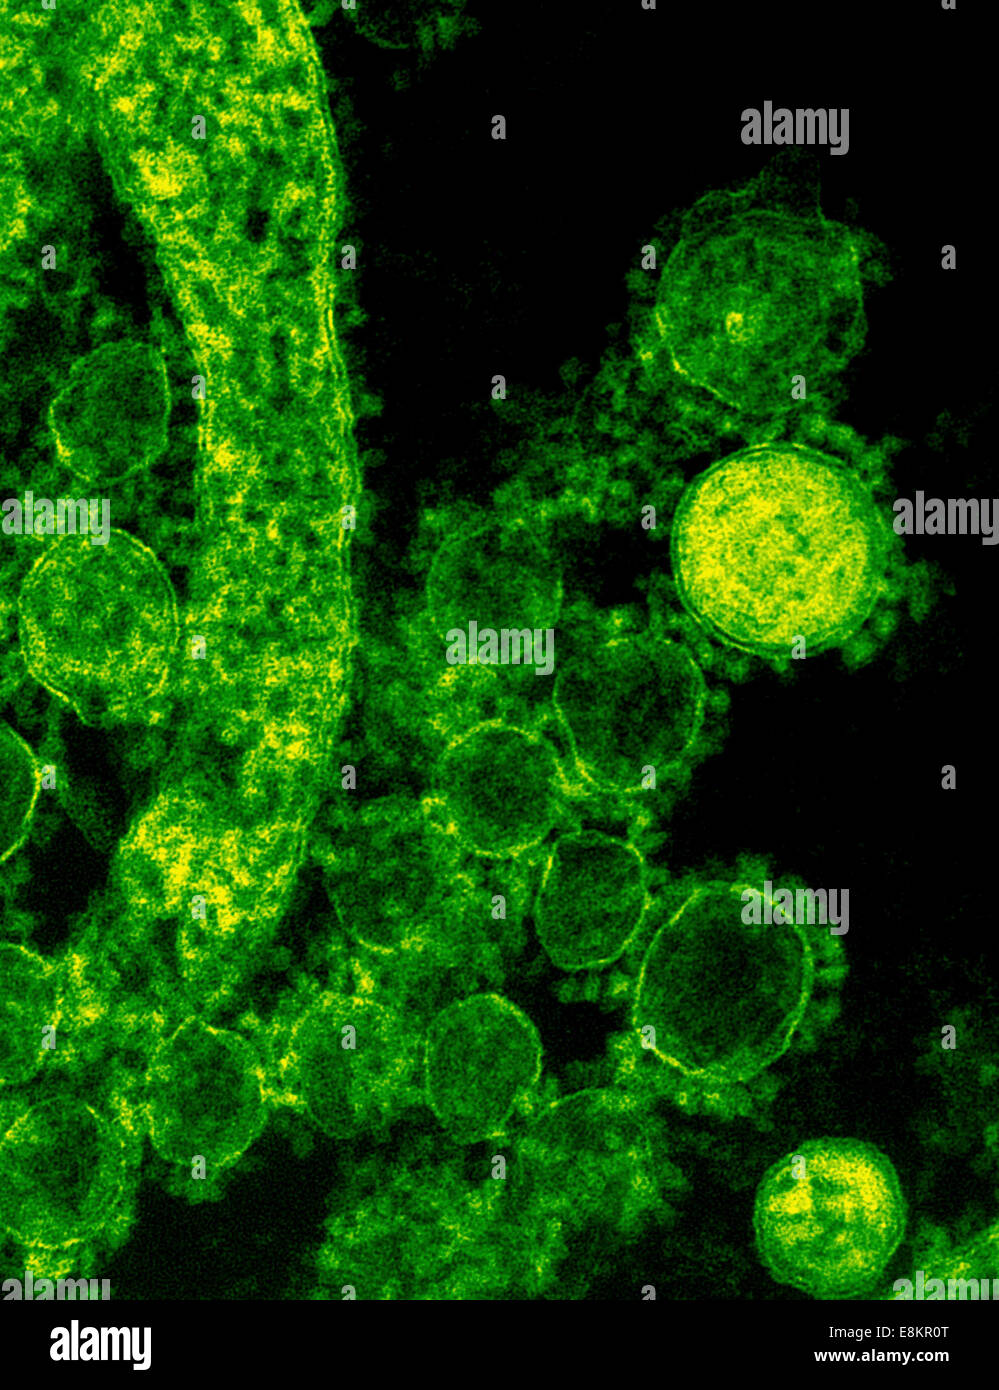 Colorizzato micrografia elettronica a trasmissione che mostra particelle del Medio Oriente la sindrome respiratoria coronavirus che è emersa in Foto Stock